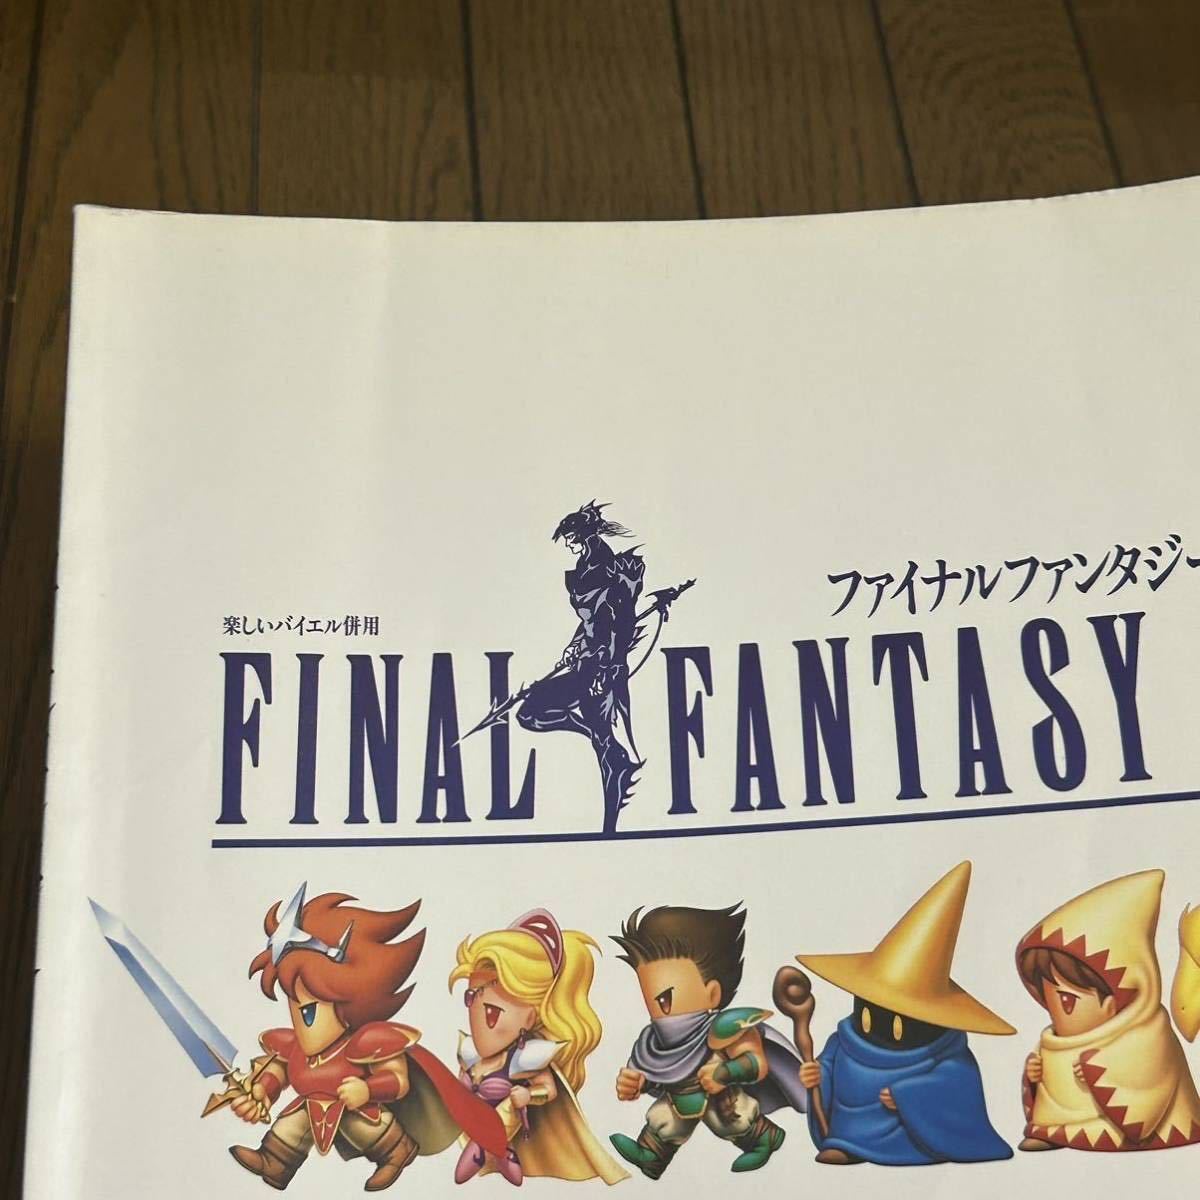  веселый bai L одновременного использования Final Fantasy FINAL FANTASY музыкальное сопровождение оценка фортепьяно . Final Fantasy 4,5,11 3 шт. комплект 